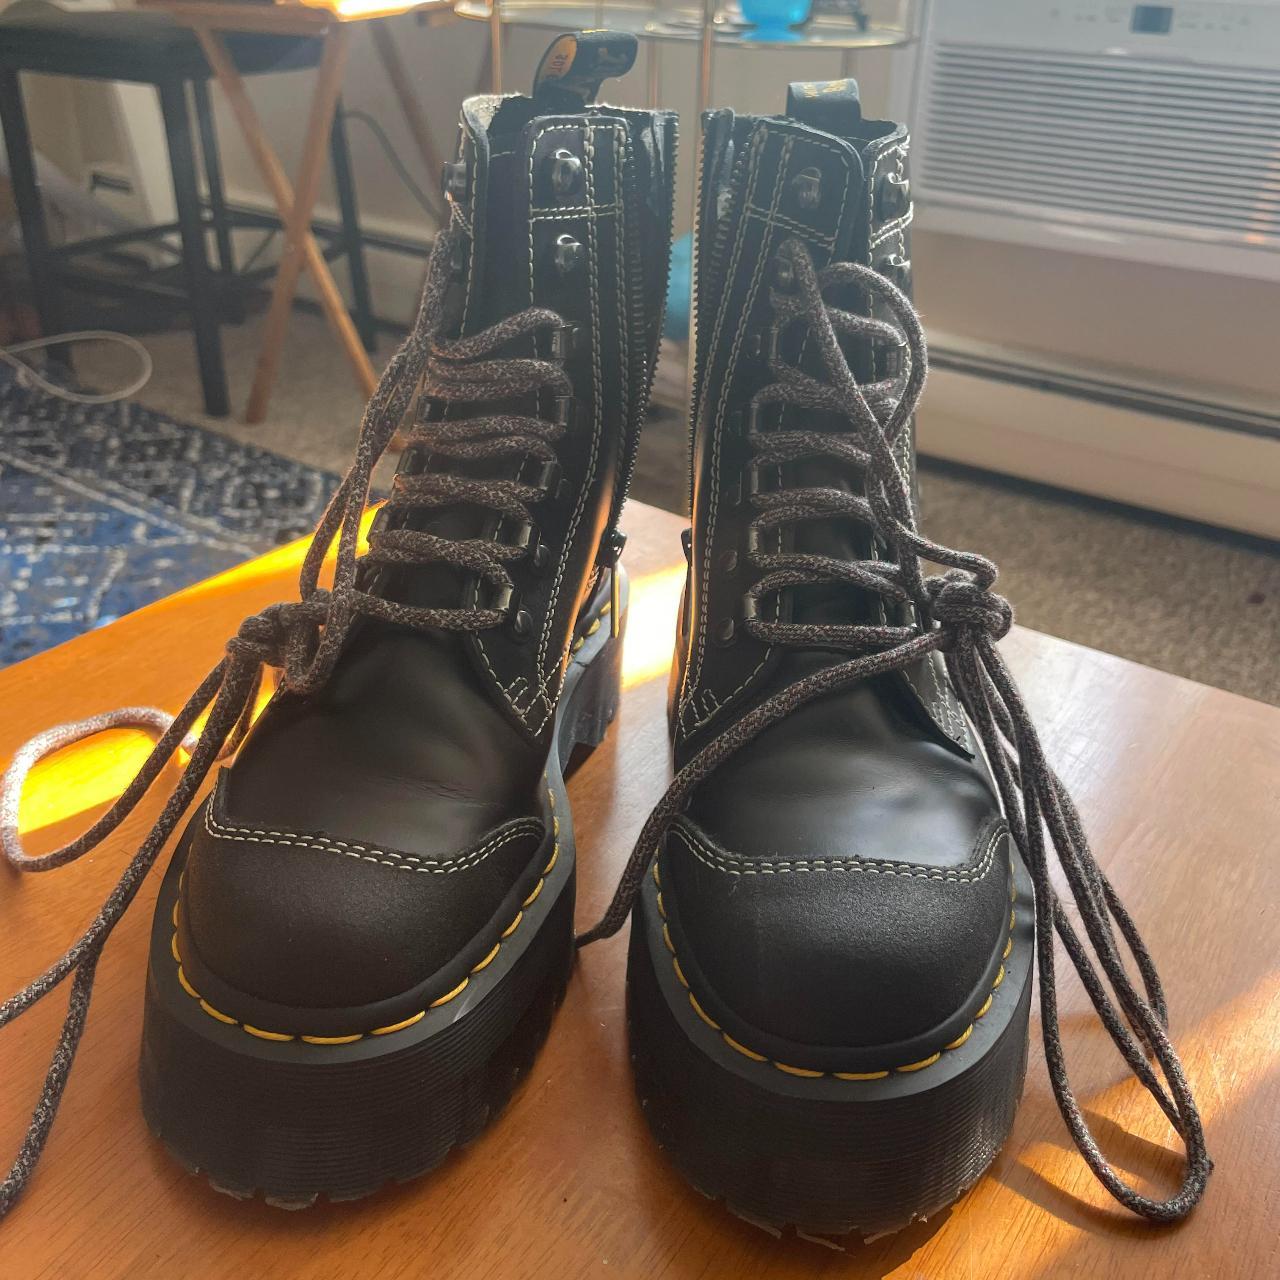 Dr. Martens Black Boots | Depop